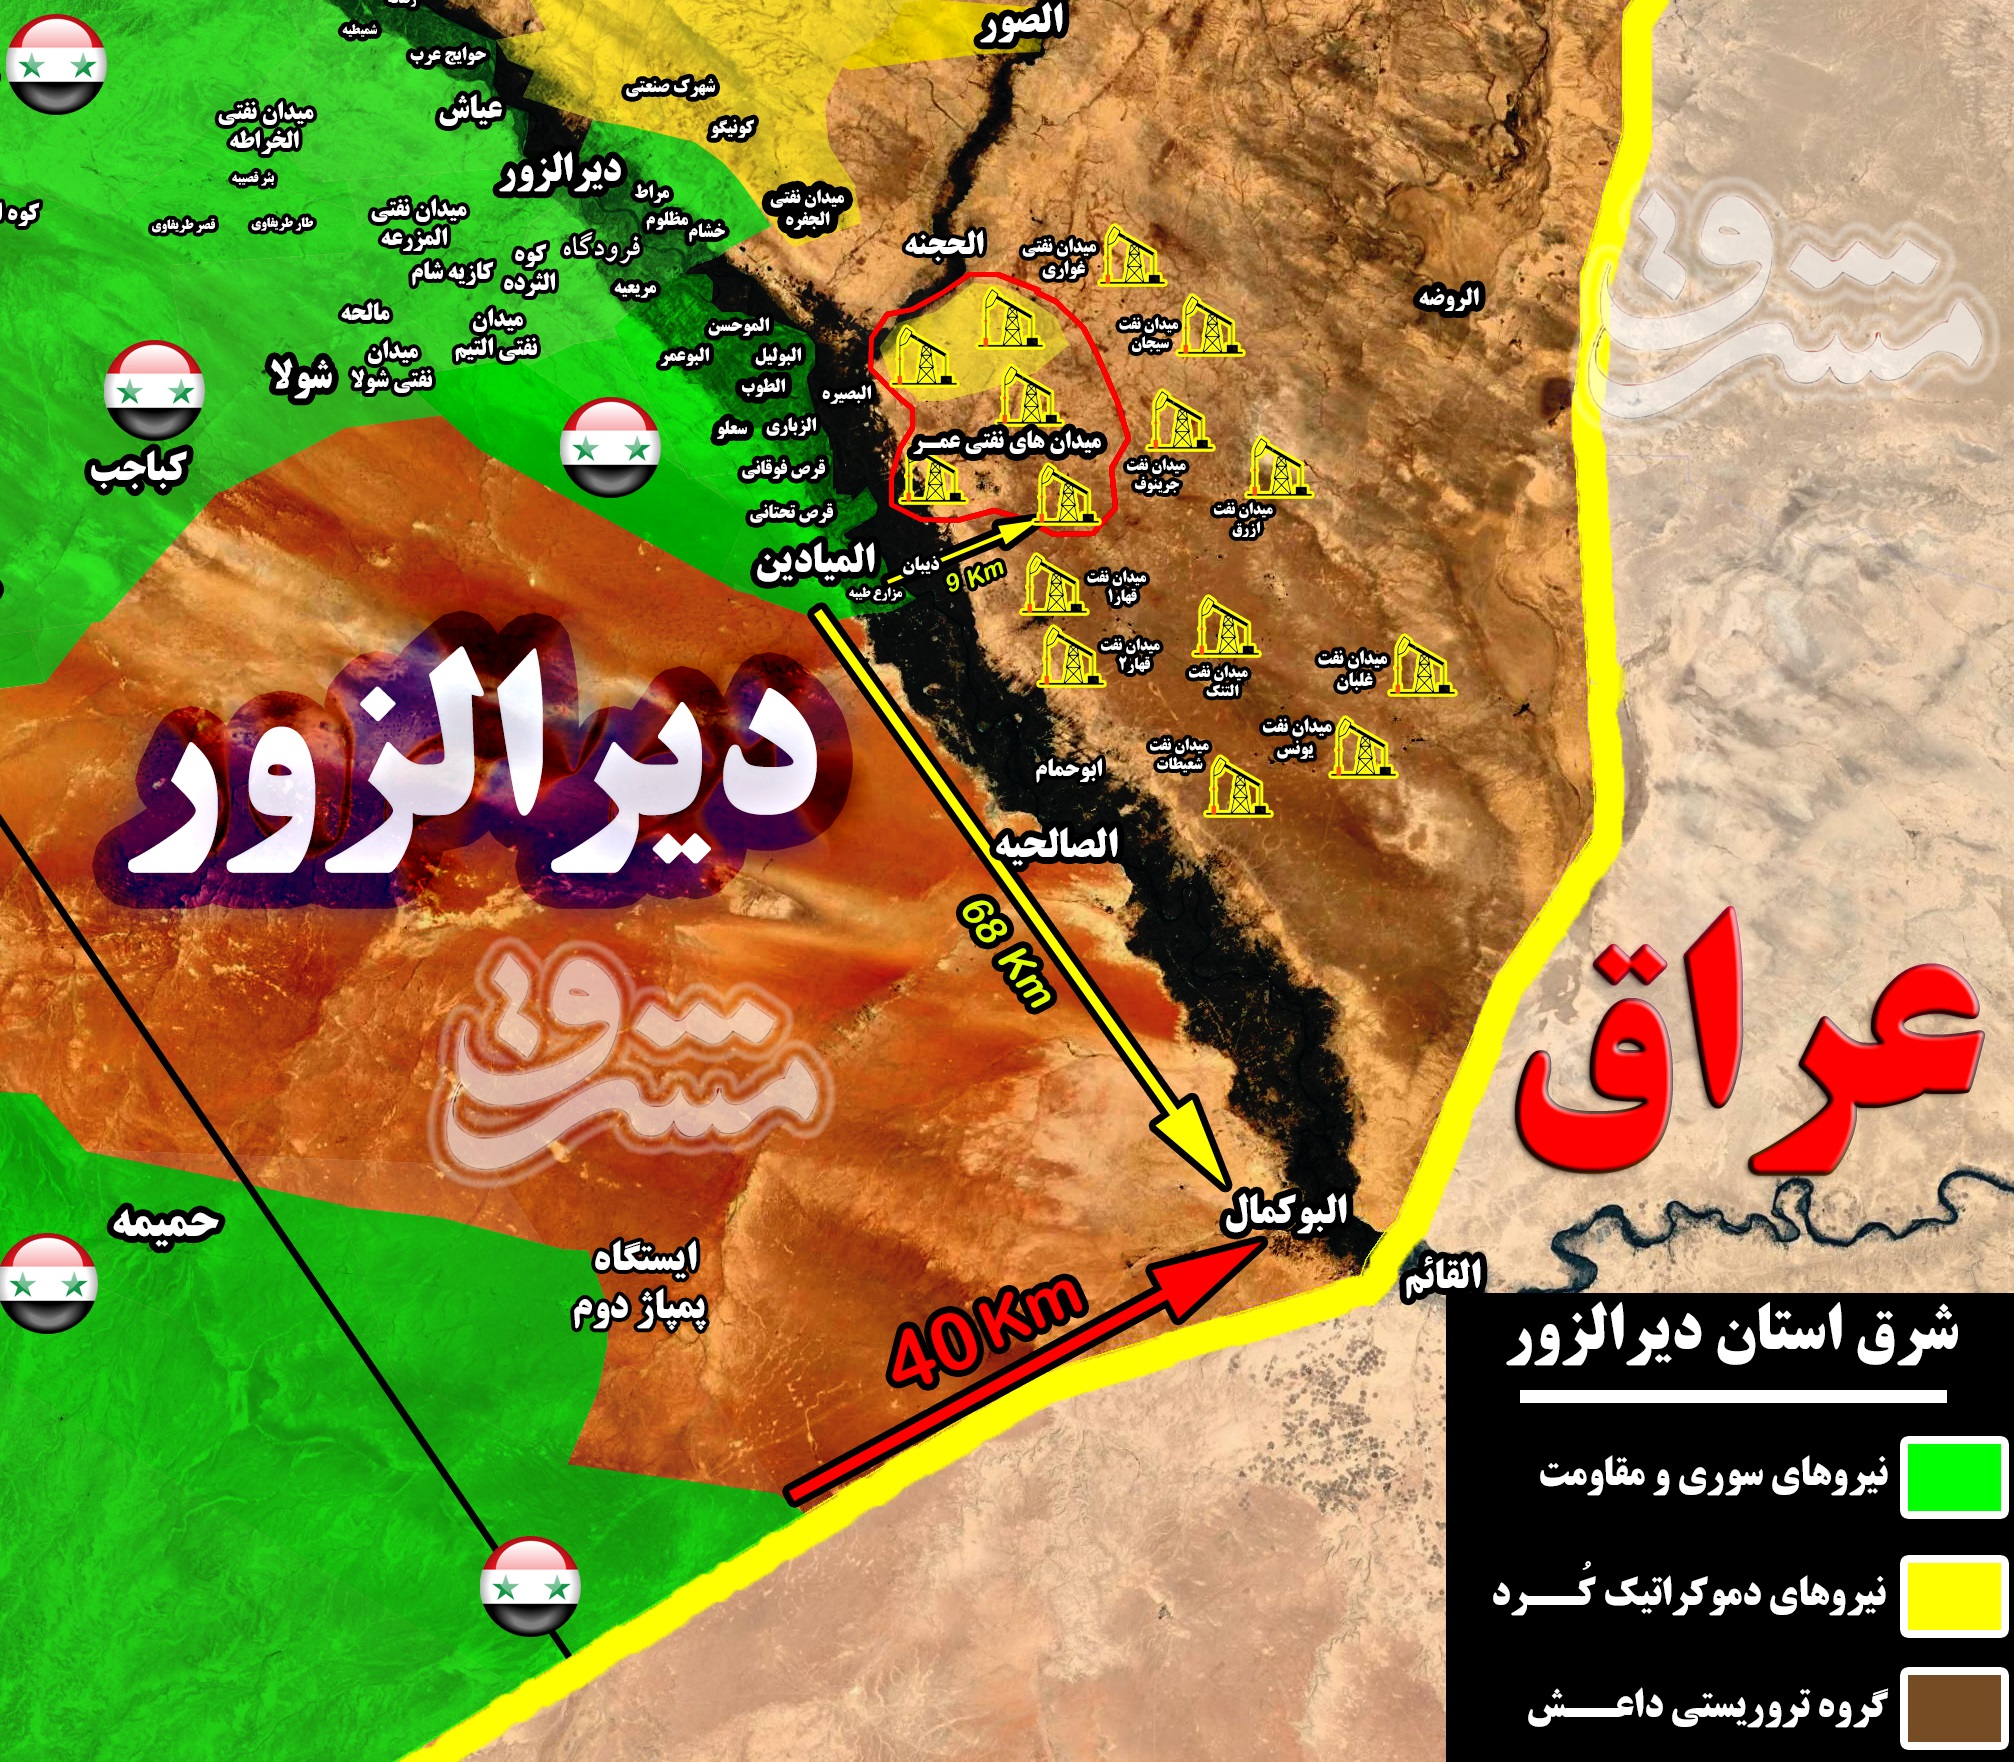 2088747 - آخرین ایستگاه بزرگ نفتی تحت اشغال داعش در آستانه آزادی + نقشه میدانی